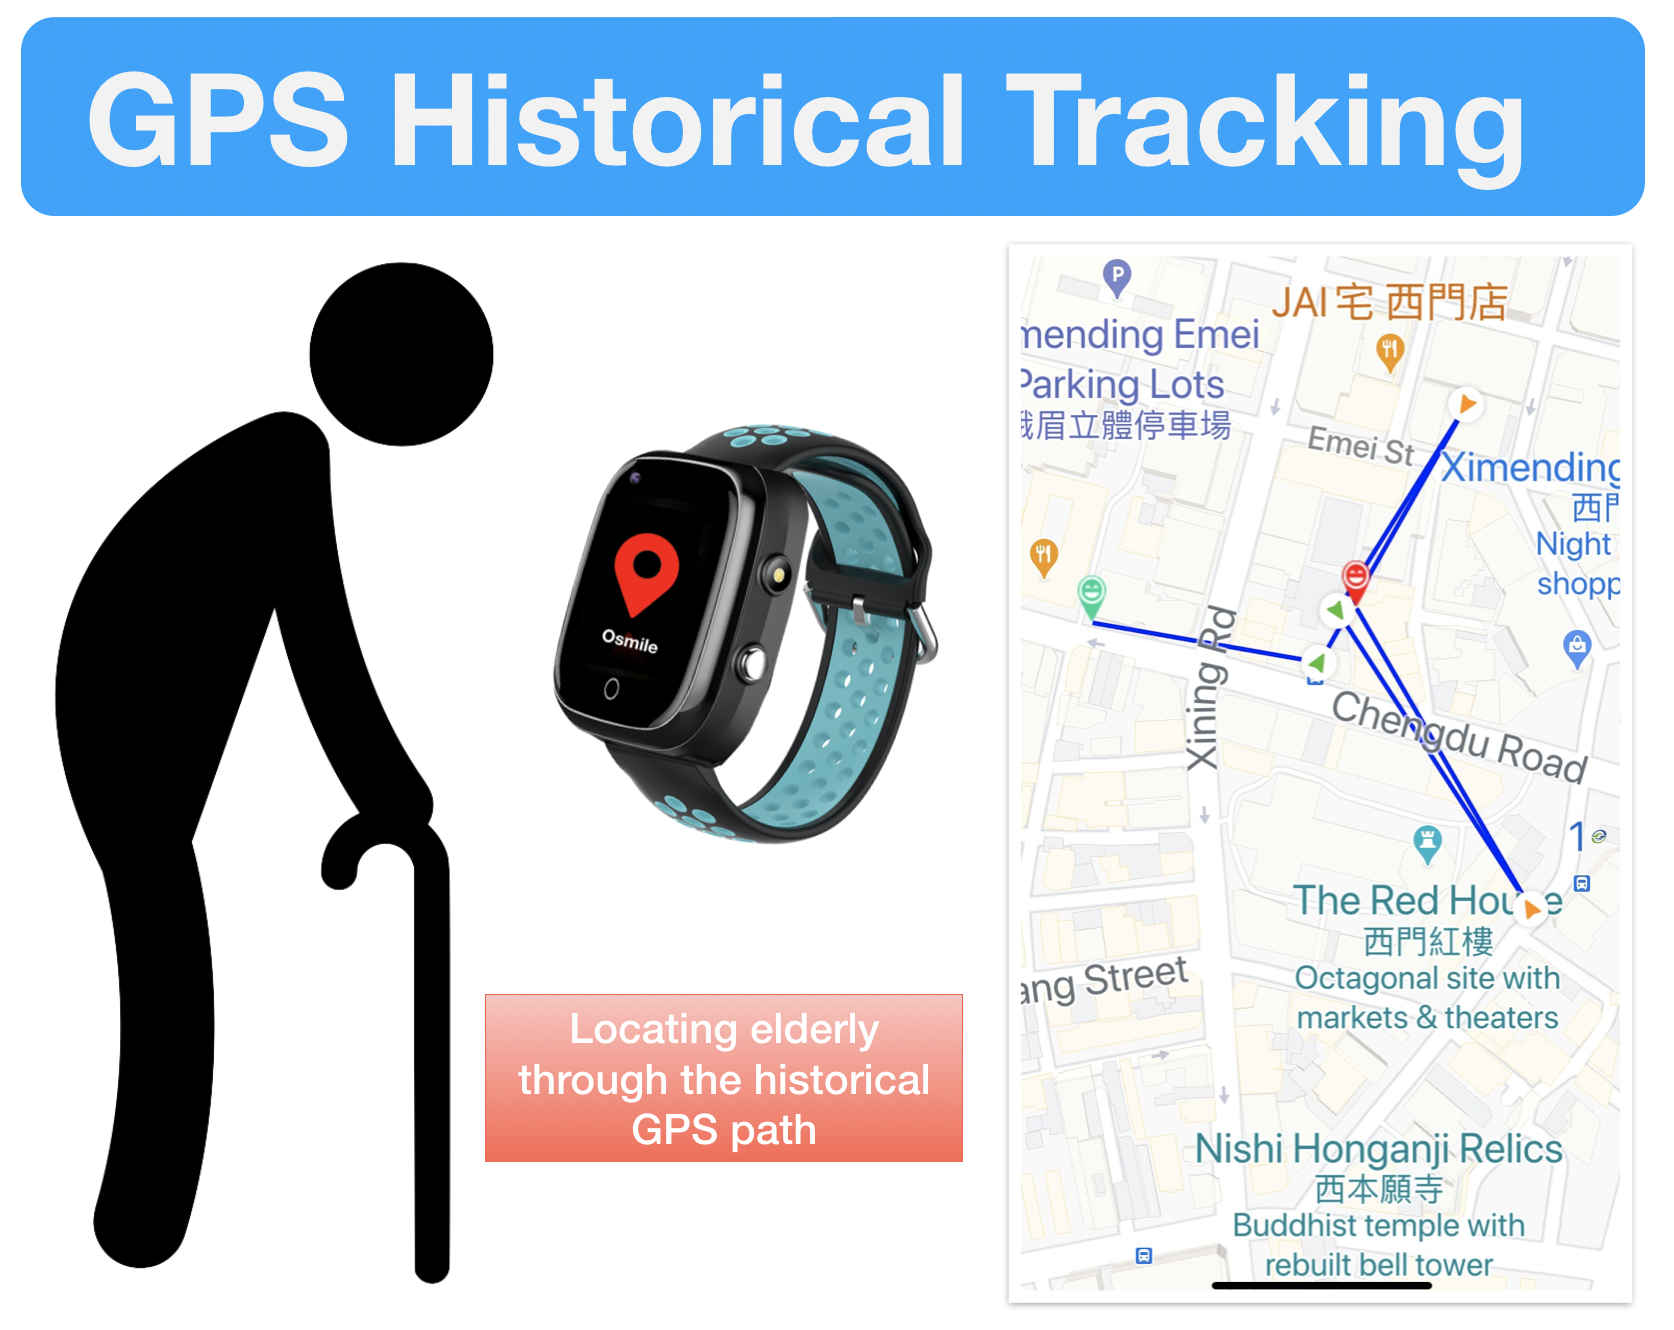 Reloj portátil Osmile ED1000 GPS Tracker para demencia y Alzheimer  (retráctil 45 cm) (JC)